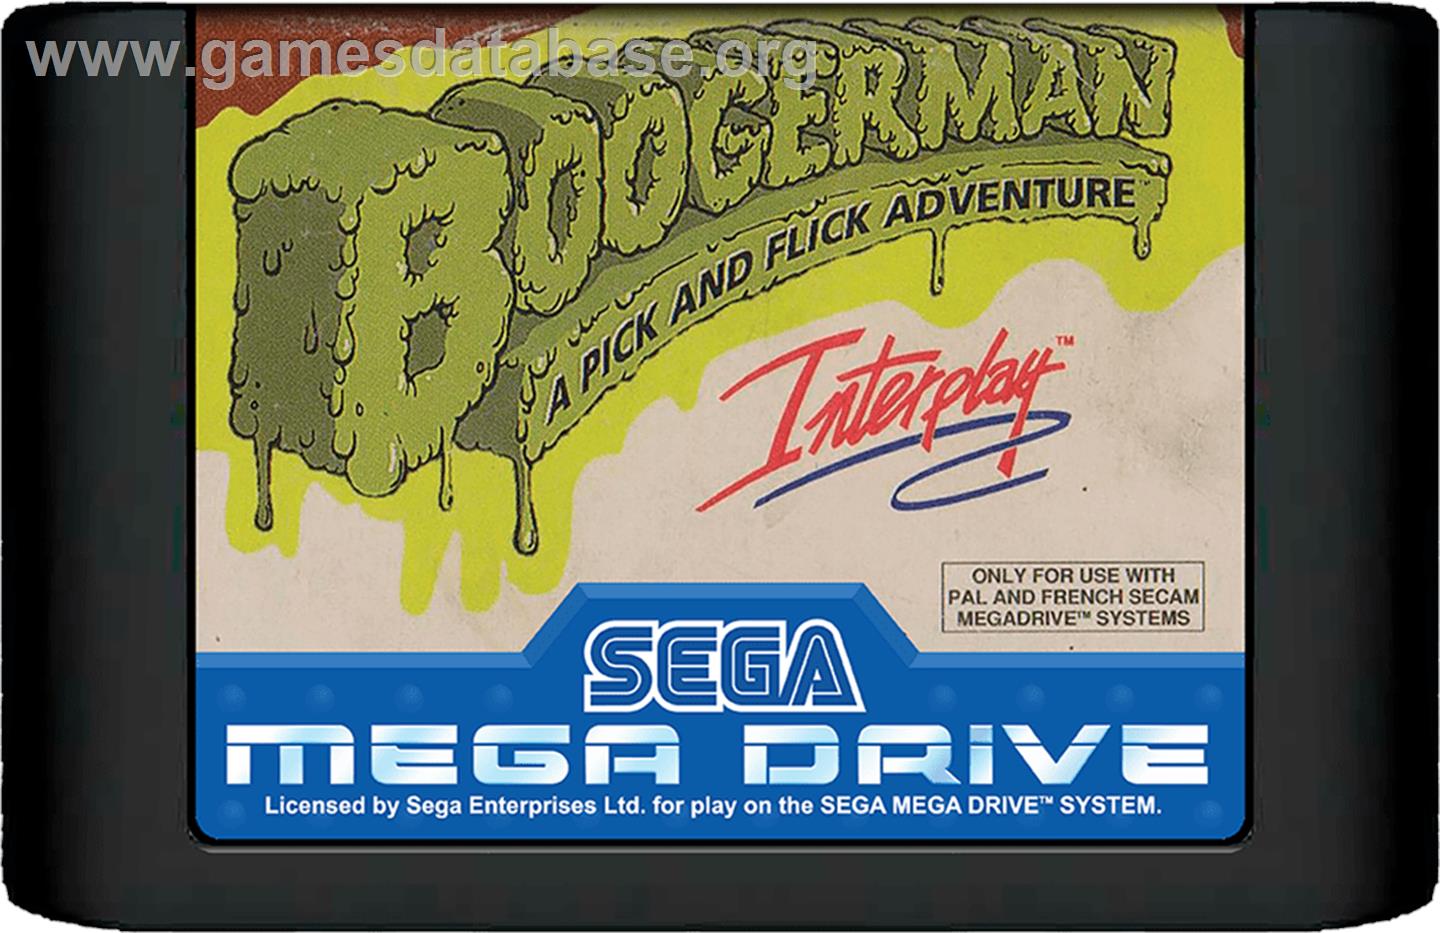 Boogerman: A Pick and Flick Adventure - Sega Genesis - Artwork - Cartridge